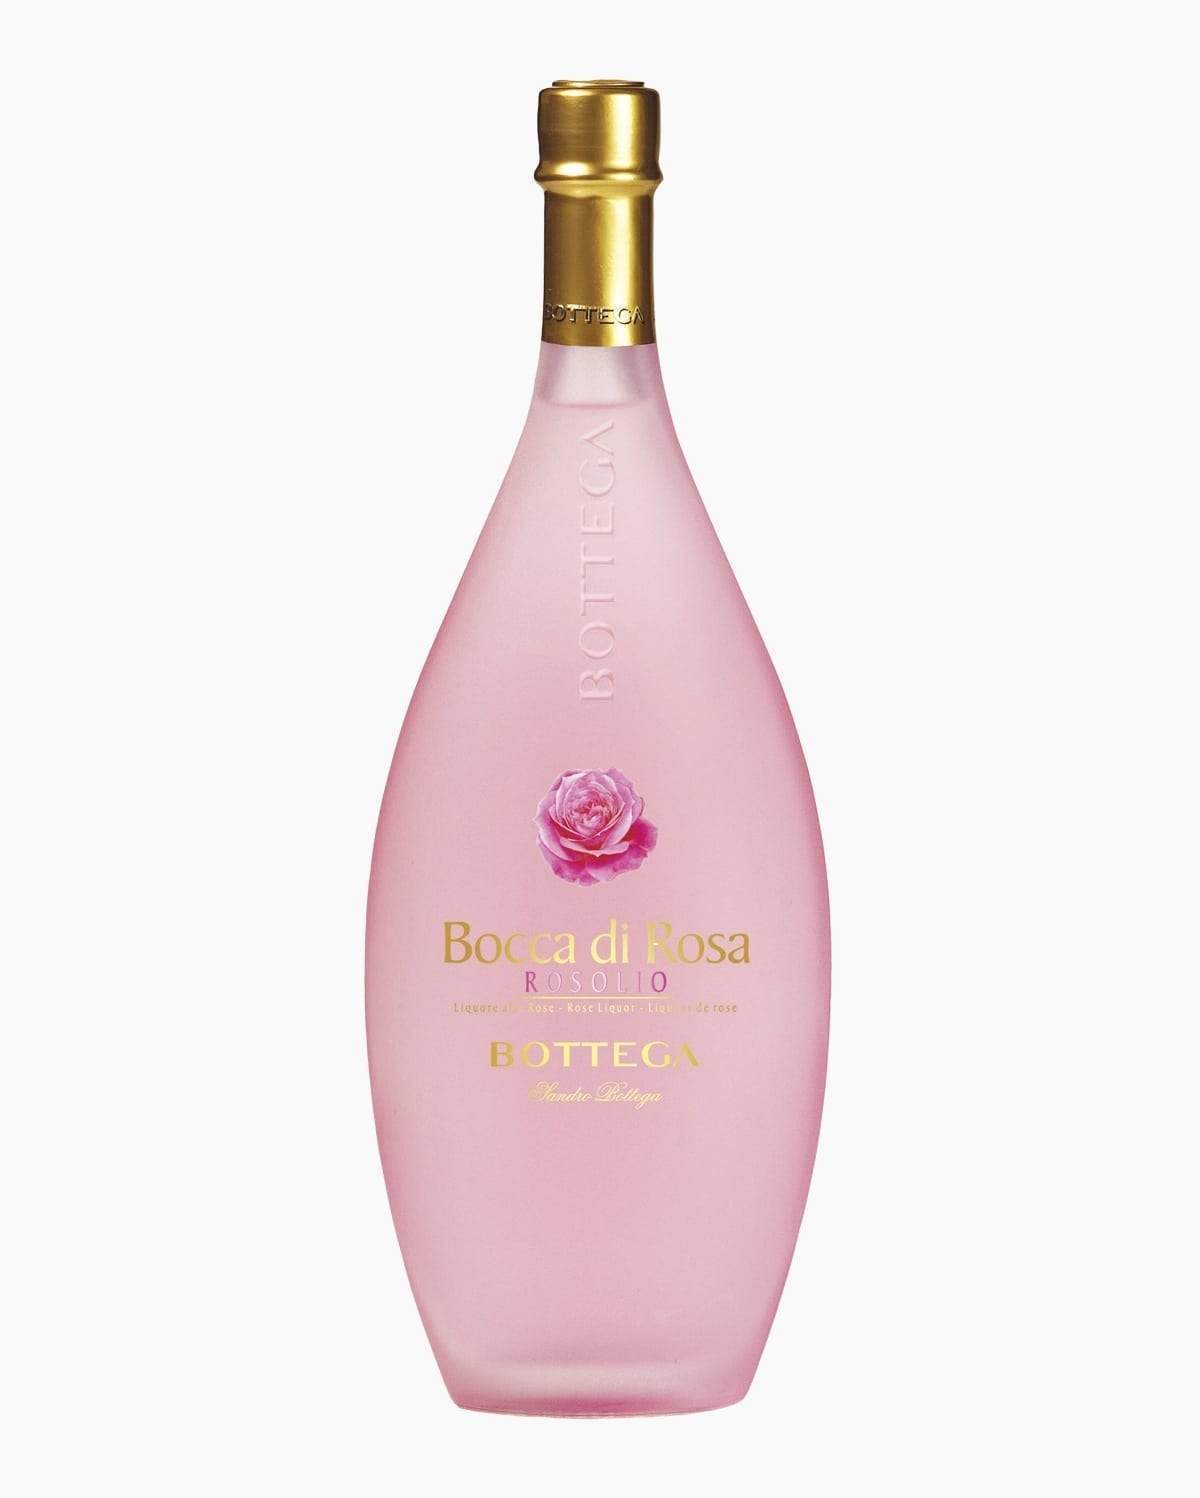 Bocca Di Rosa - Liquore alla rosa bottega 50cl (Spedizioni 🌎) - Ottagono - Pasticceria dal 1983 - Prosecco Bottega Brut DOC 0.75l - sicilia - catania - online